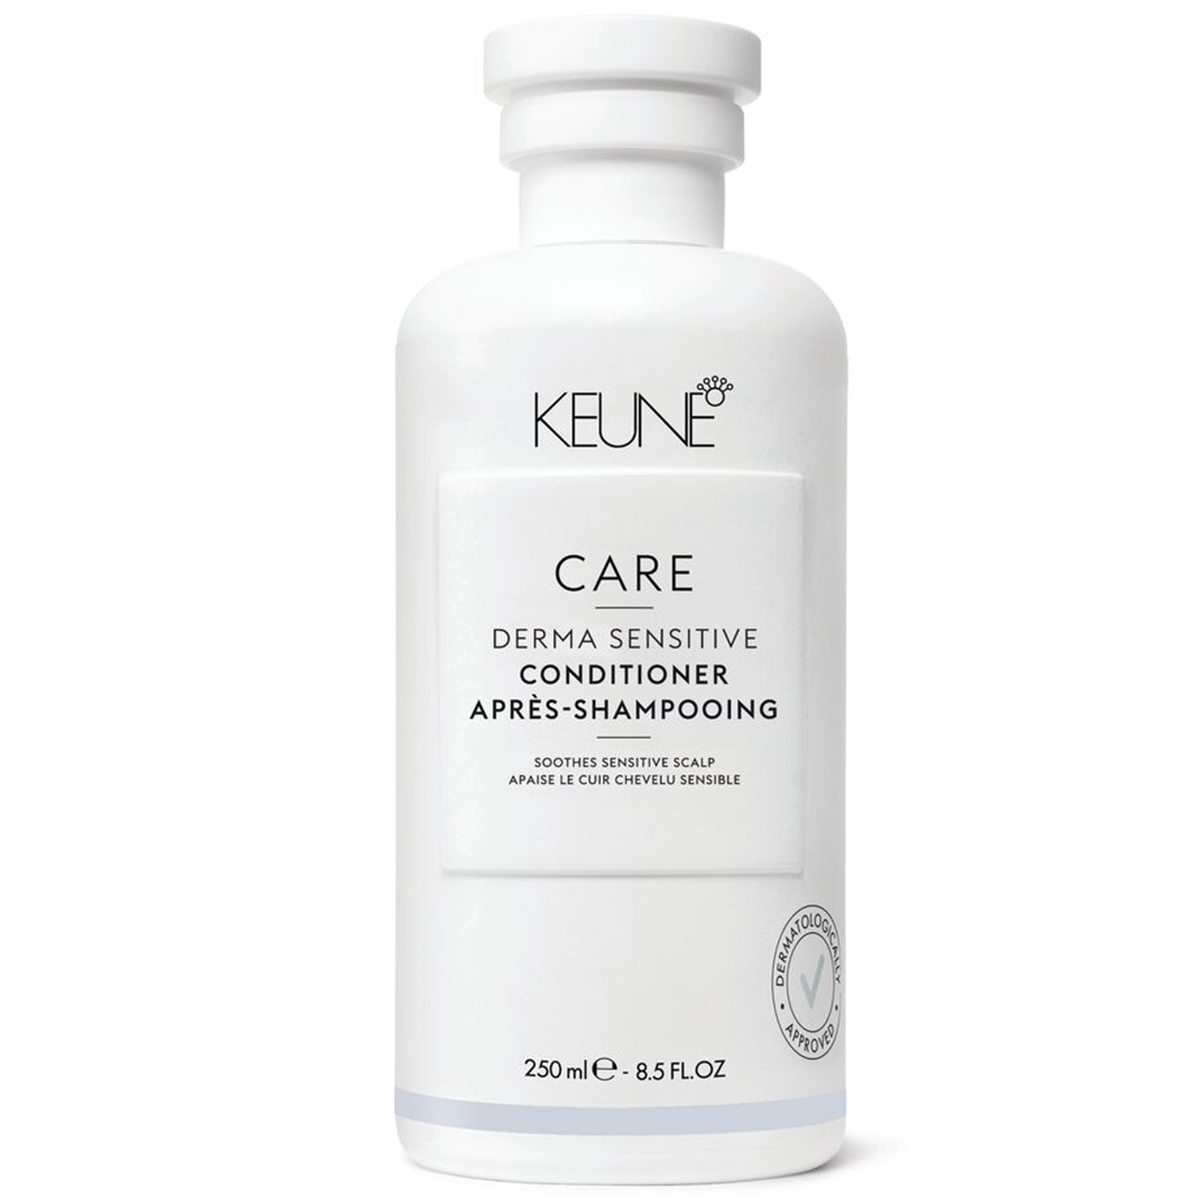 Keune Кондиционер для чувствительной кожи головы, 250 мл (Keune, Care) кондиционер для чувствительной кожи головы keune care derma sensitive 250 мл